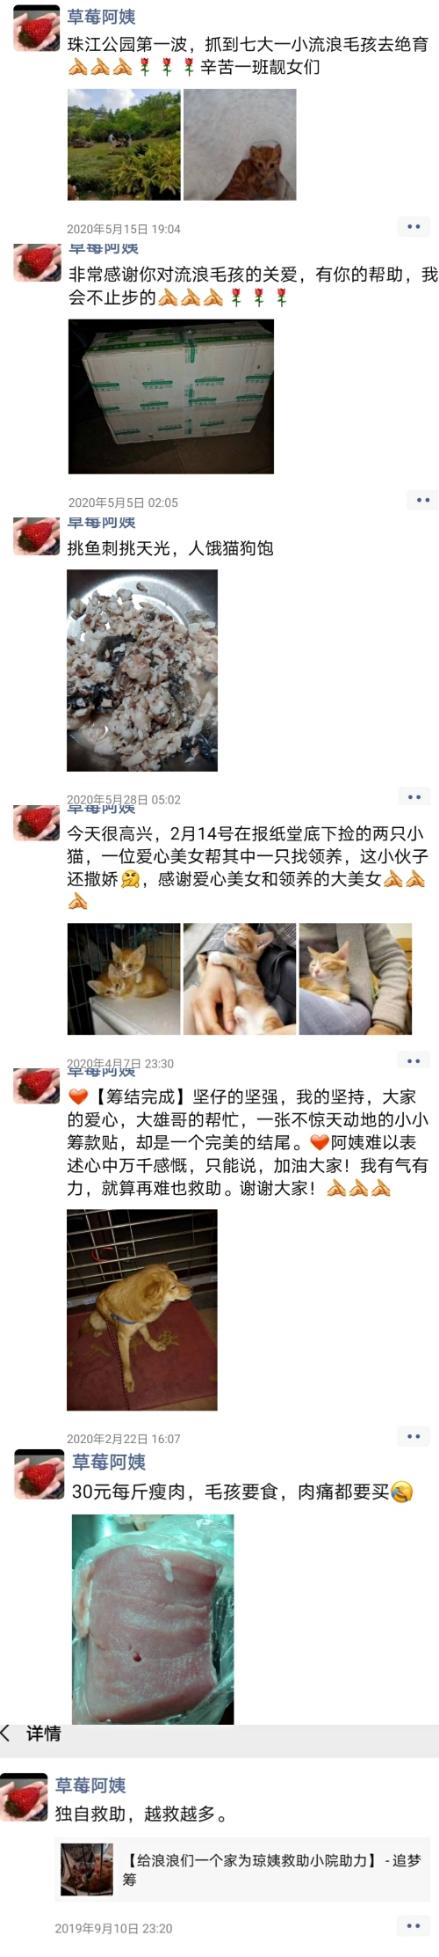 58同城网宠物猫领养(广州宠物猫58同城)